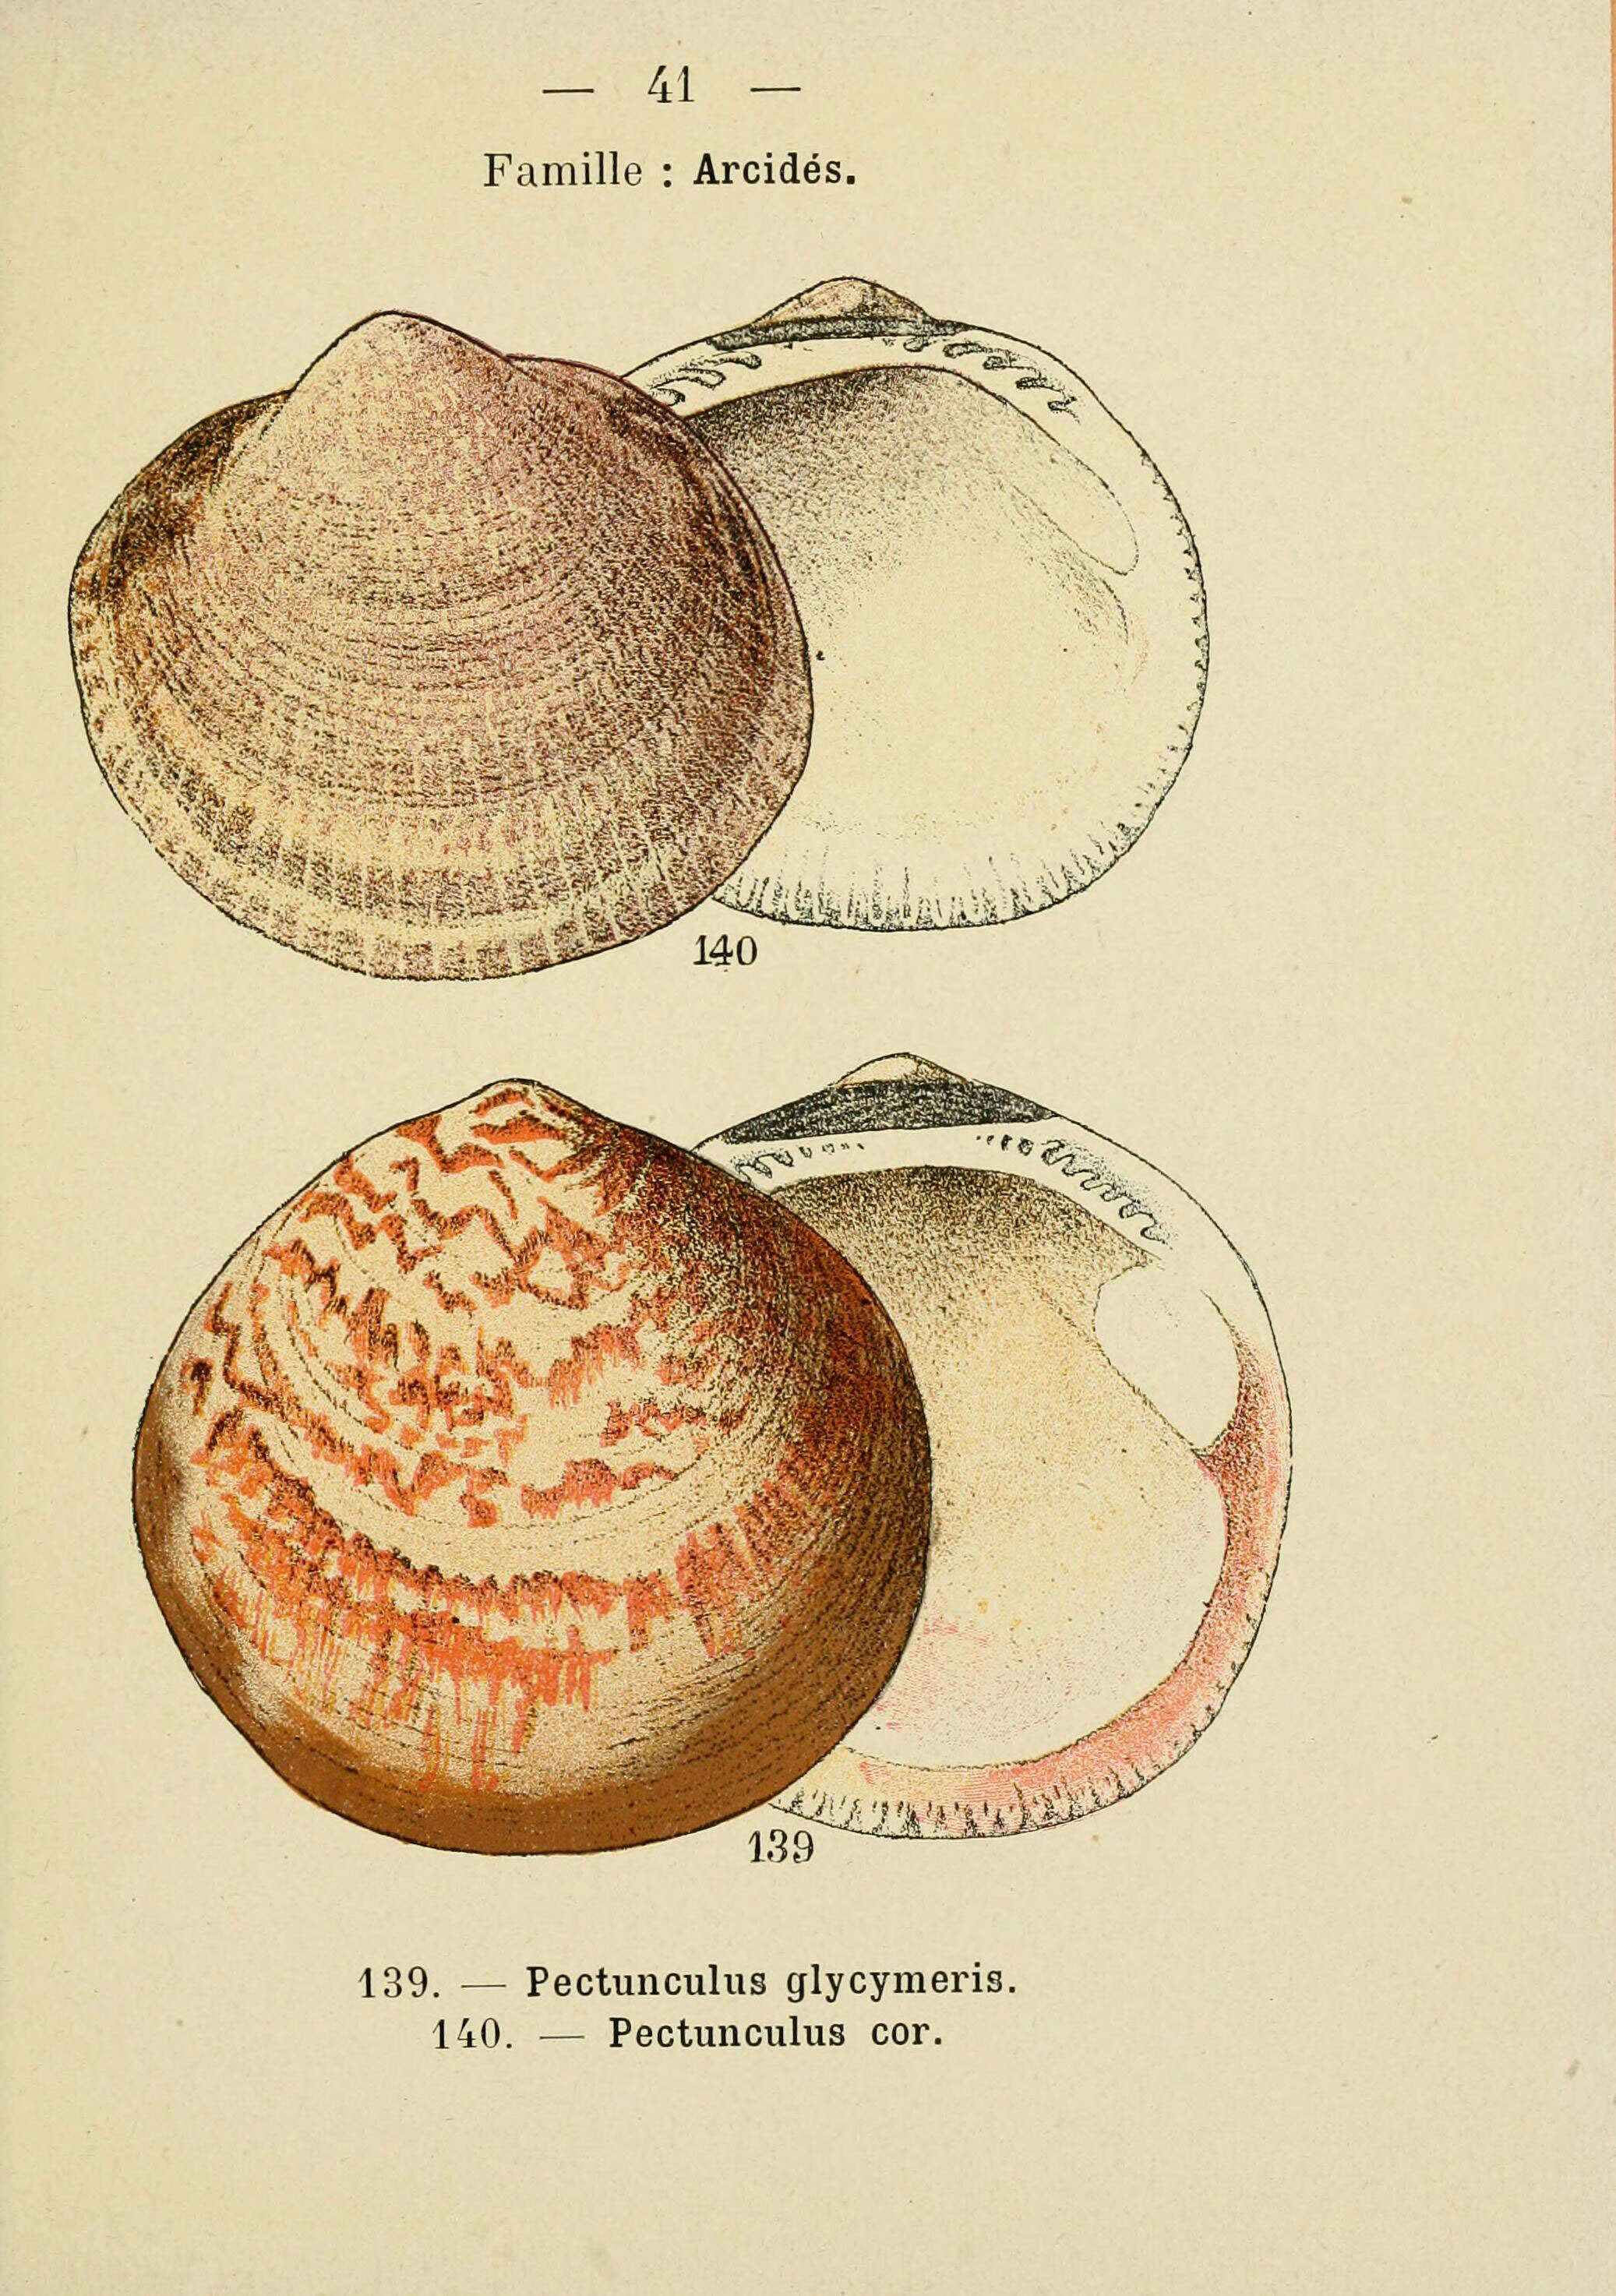 Plancia ëd Glycymeris glycymeris (Linnaeus 1758)